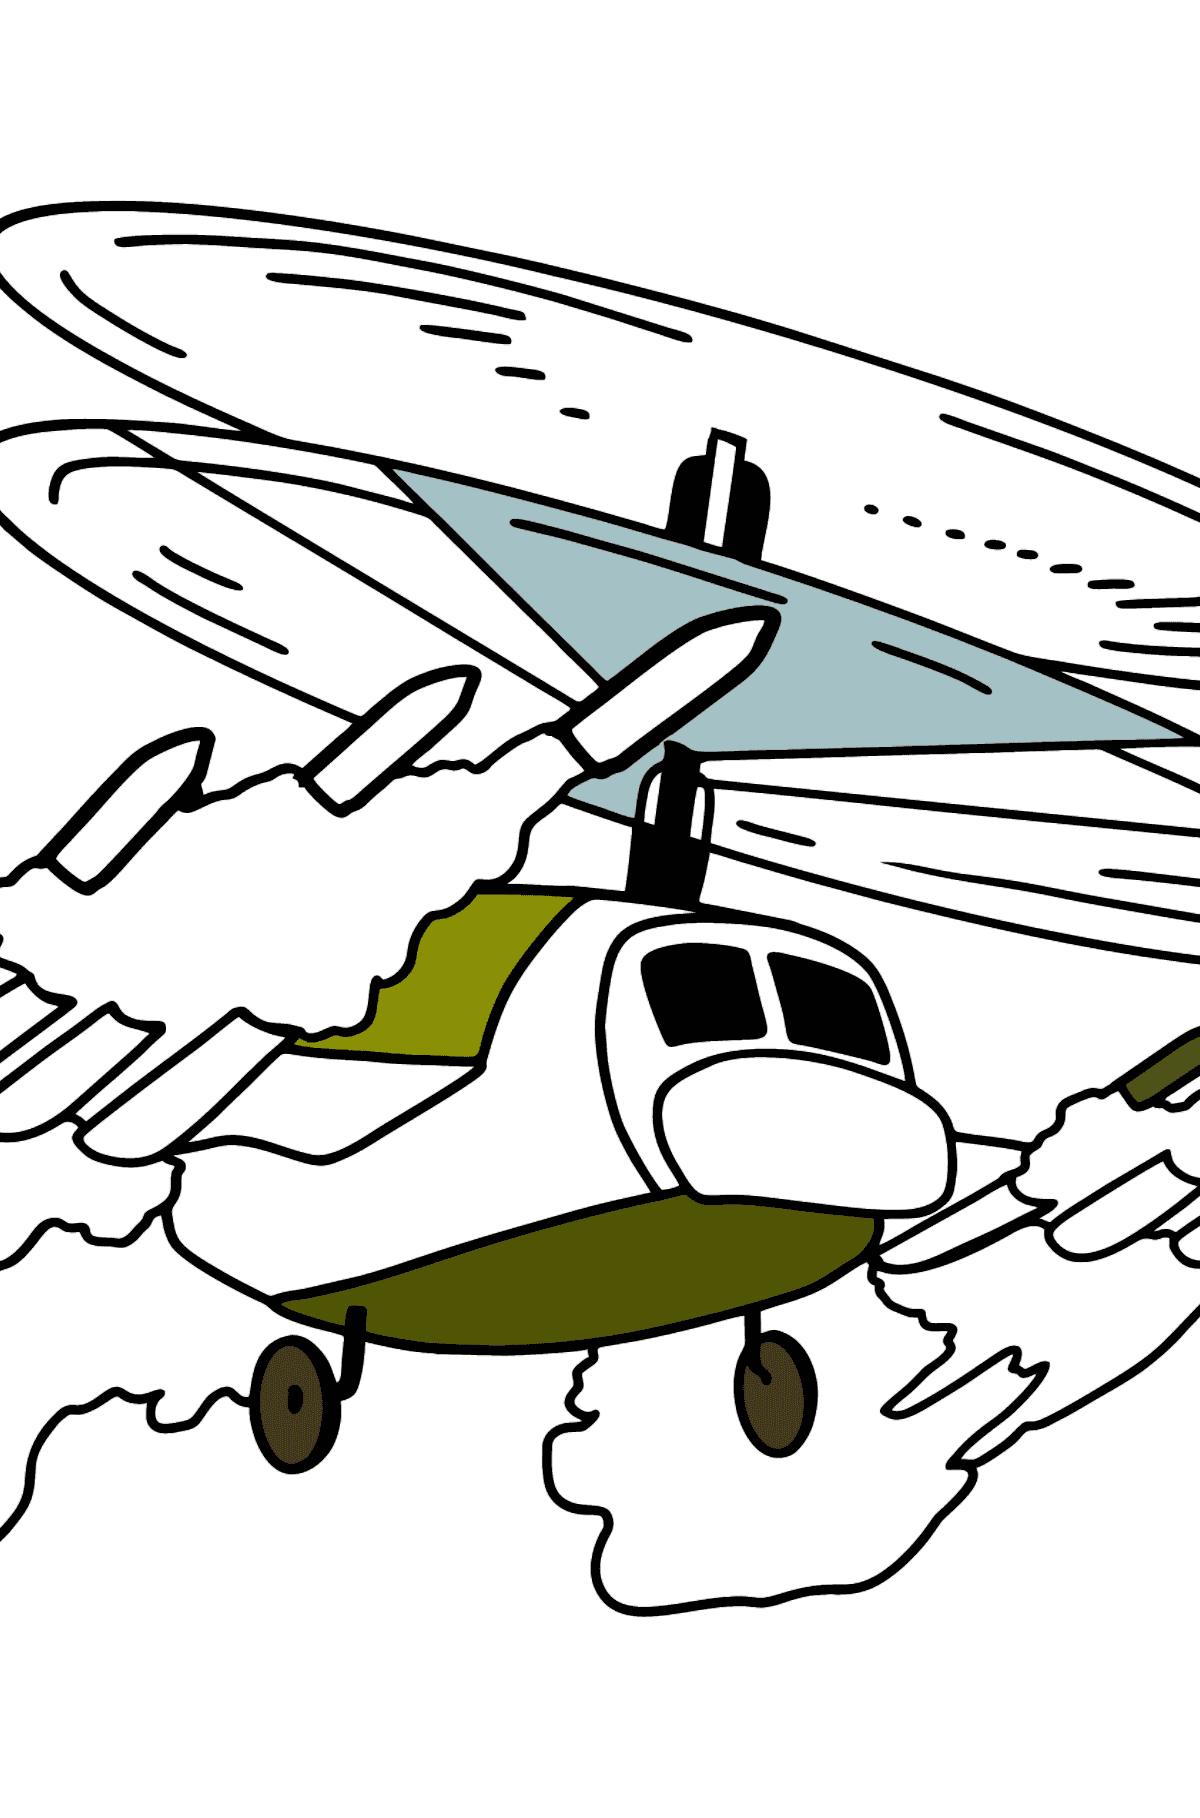 Dibujo para Colorear - Un Helicóptero Militar - Dibujos para Colorear para Niños